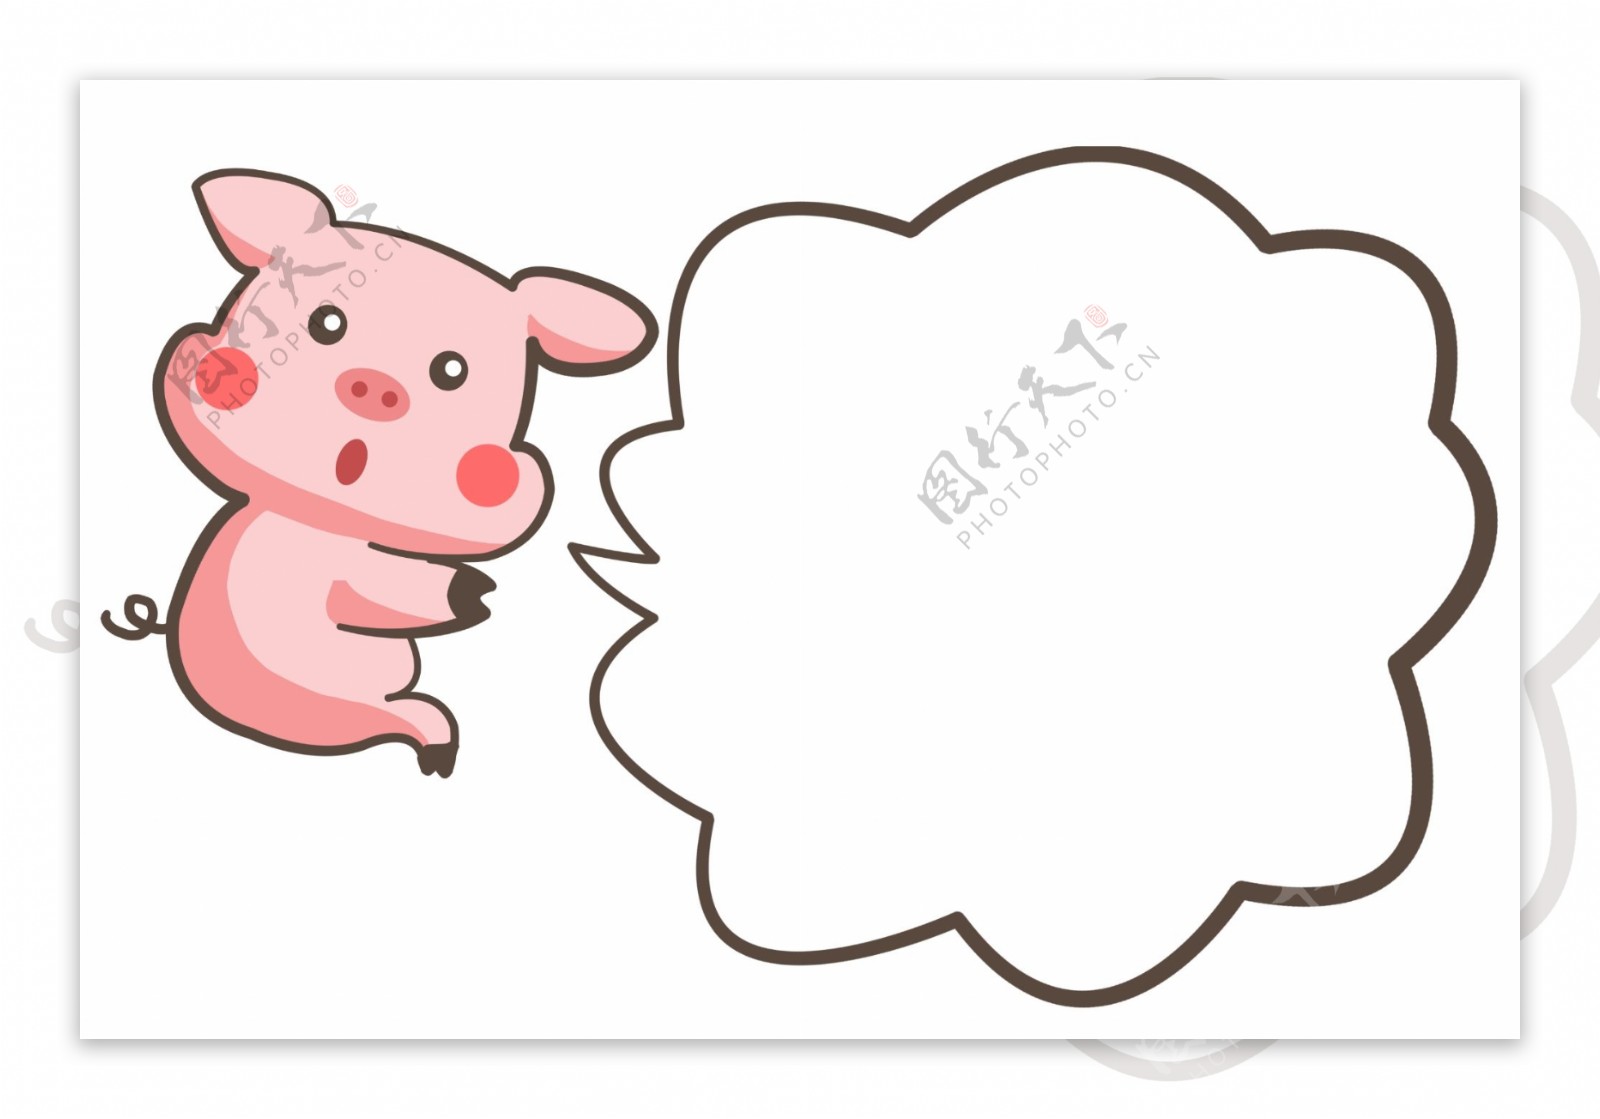 手绘可爱小猪和对话框